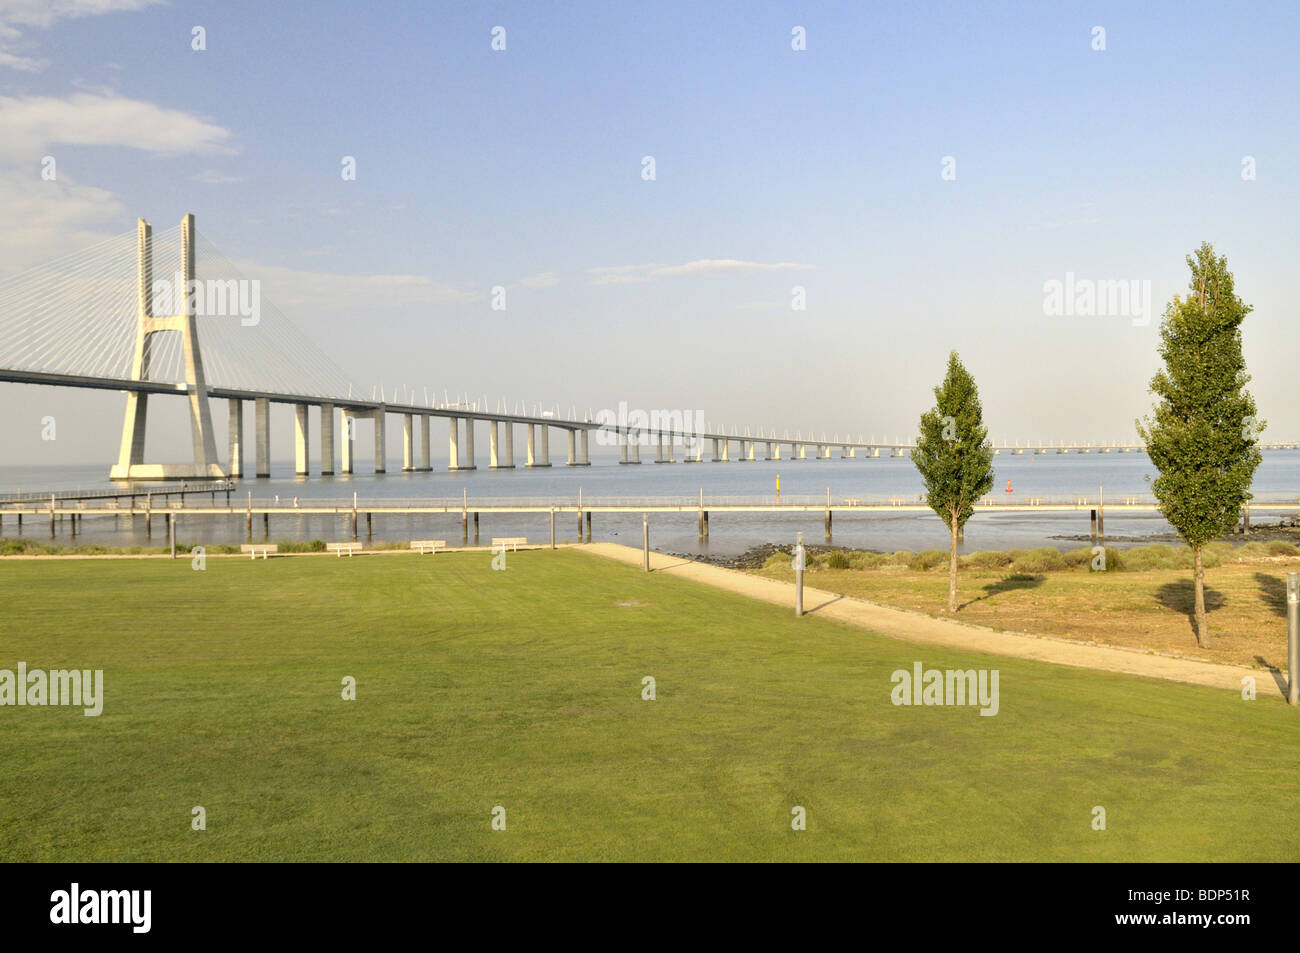 Pont Vasco da Gama sur le Rio Tejo River dans le parc Parque das Nações, site de l'Expo 98, Lisbonne, Portugal, Europe Banque D'Images